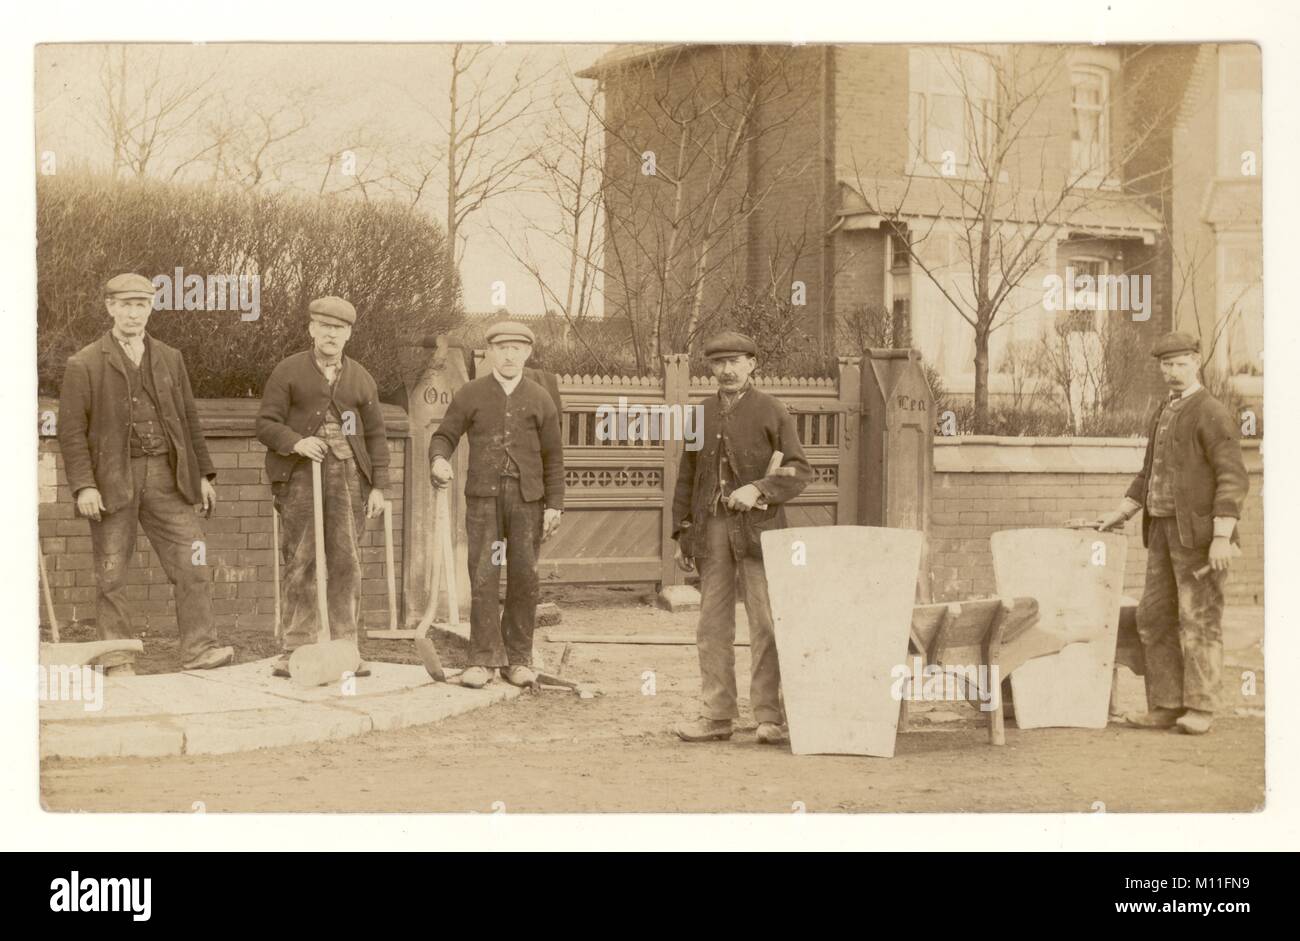 Carte postale originale d'une bande de ouvriers édouardiens, de naves, de constructeurs à l'extérieur de la maison, portant des vêtements de travail et des casquettes plates, tenant leurs outils de travail, travaillant sur une chaussée, bâtiment de route, vers 1910, Royaume-Uni Banque D'Images